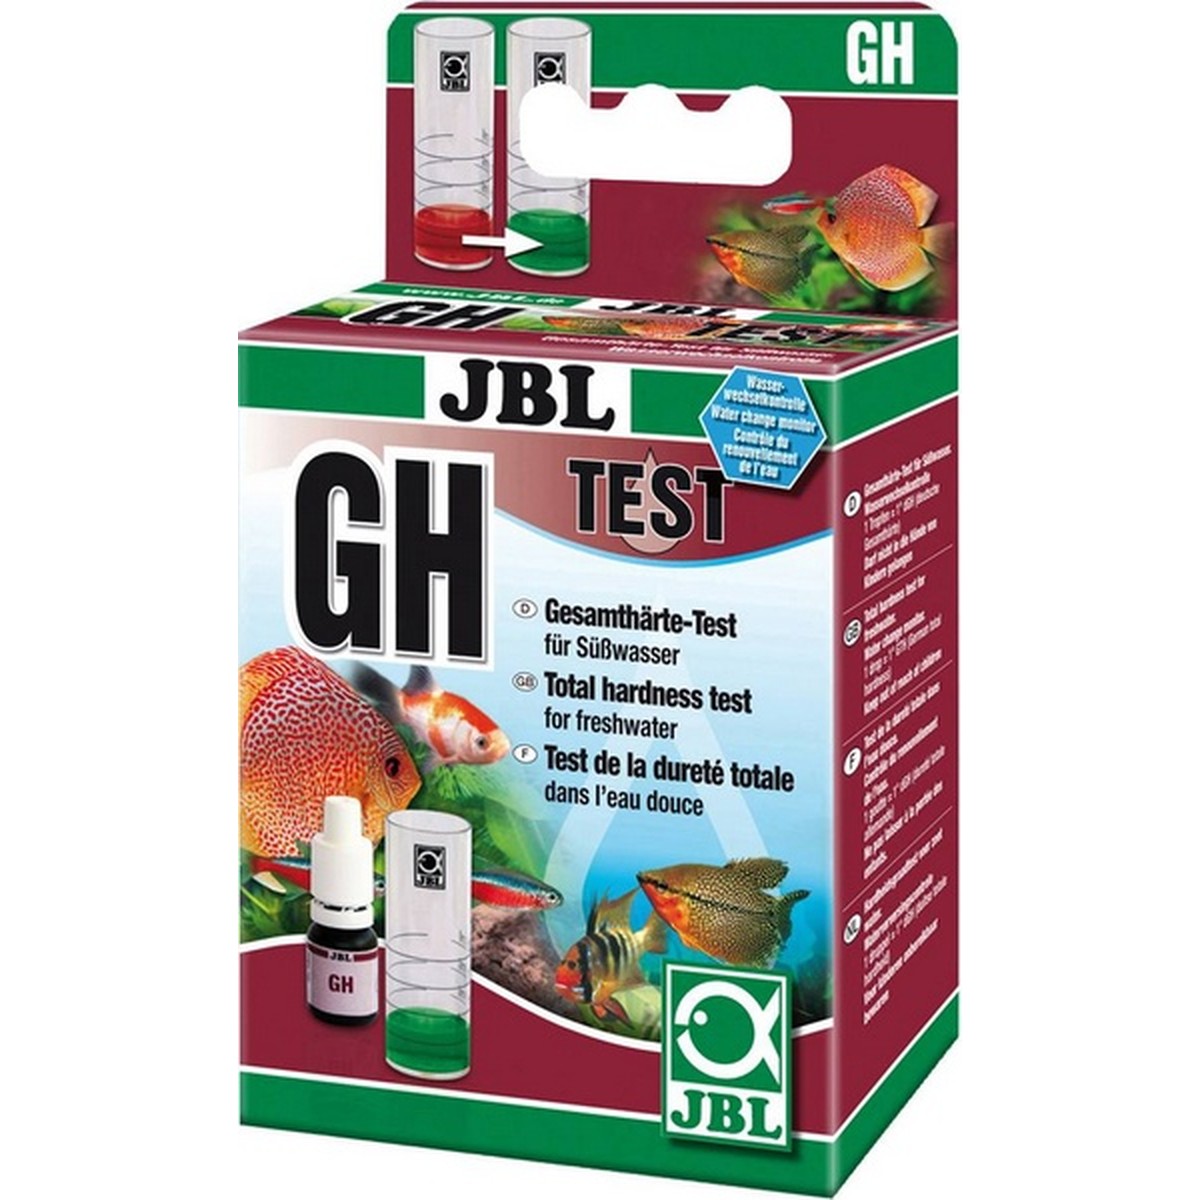   JBL GH test set D/GB/F/NL/I  